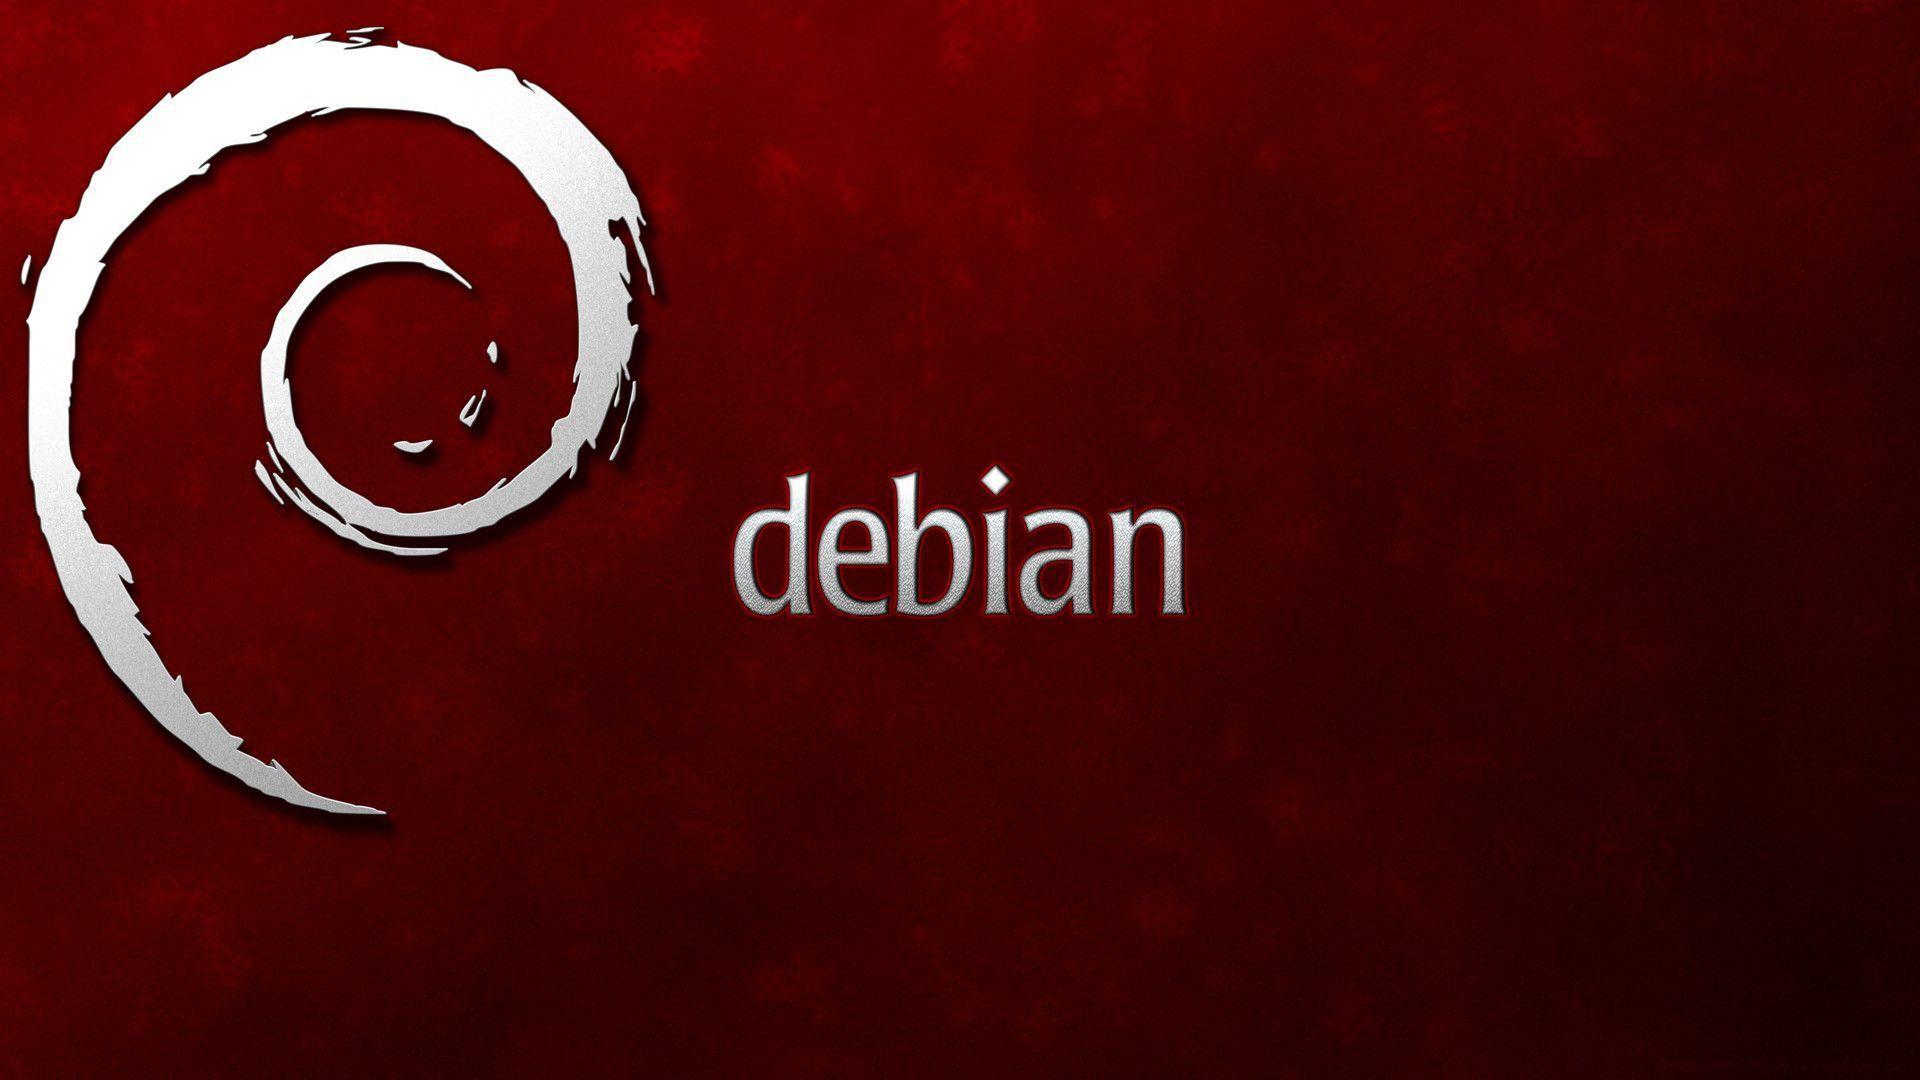 Debian Wallpapers 1920x1080